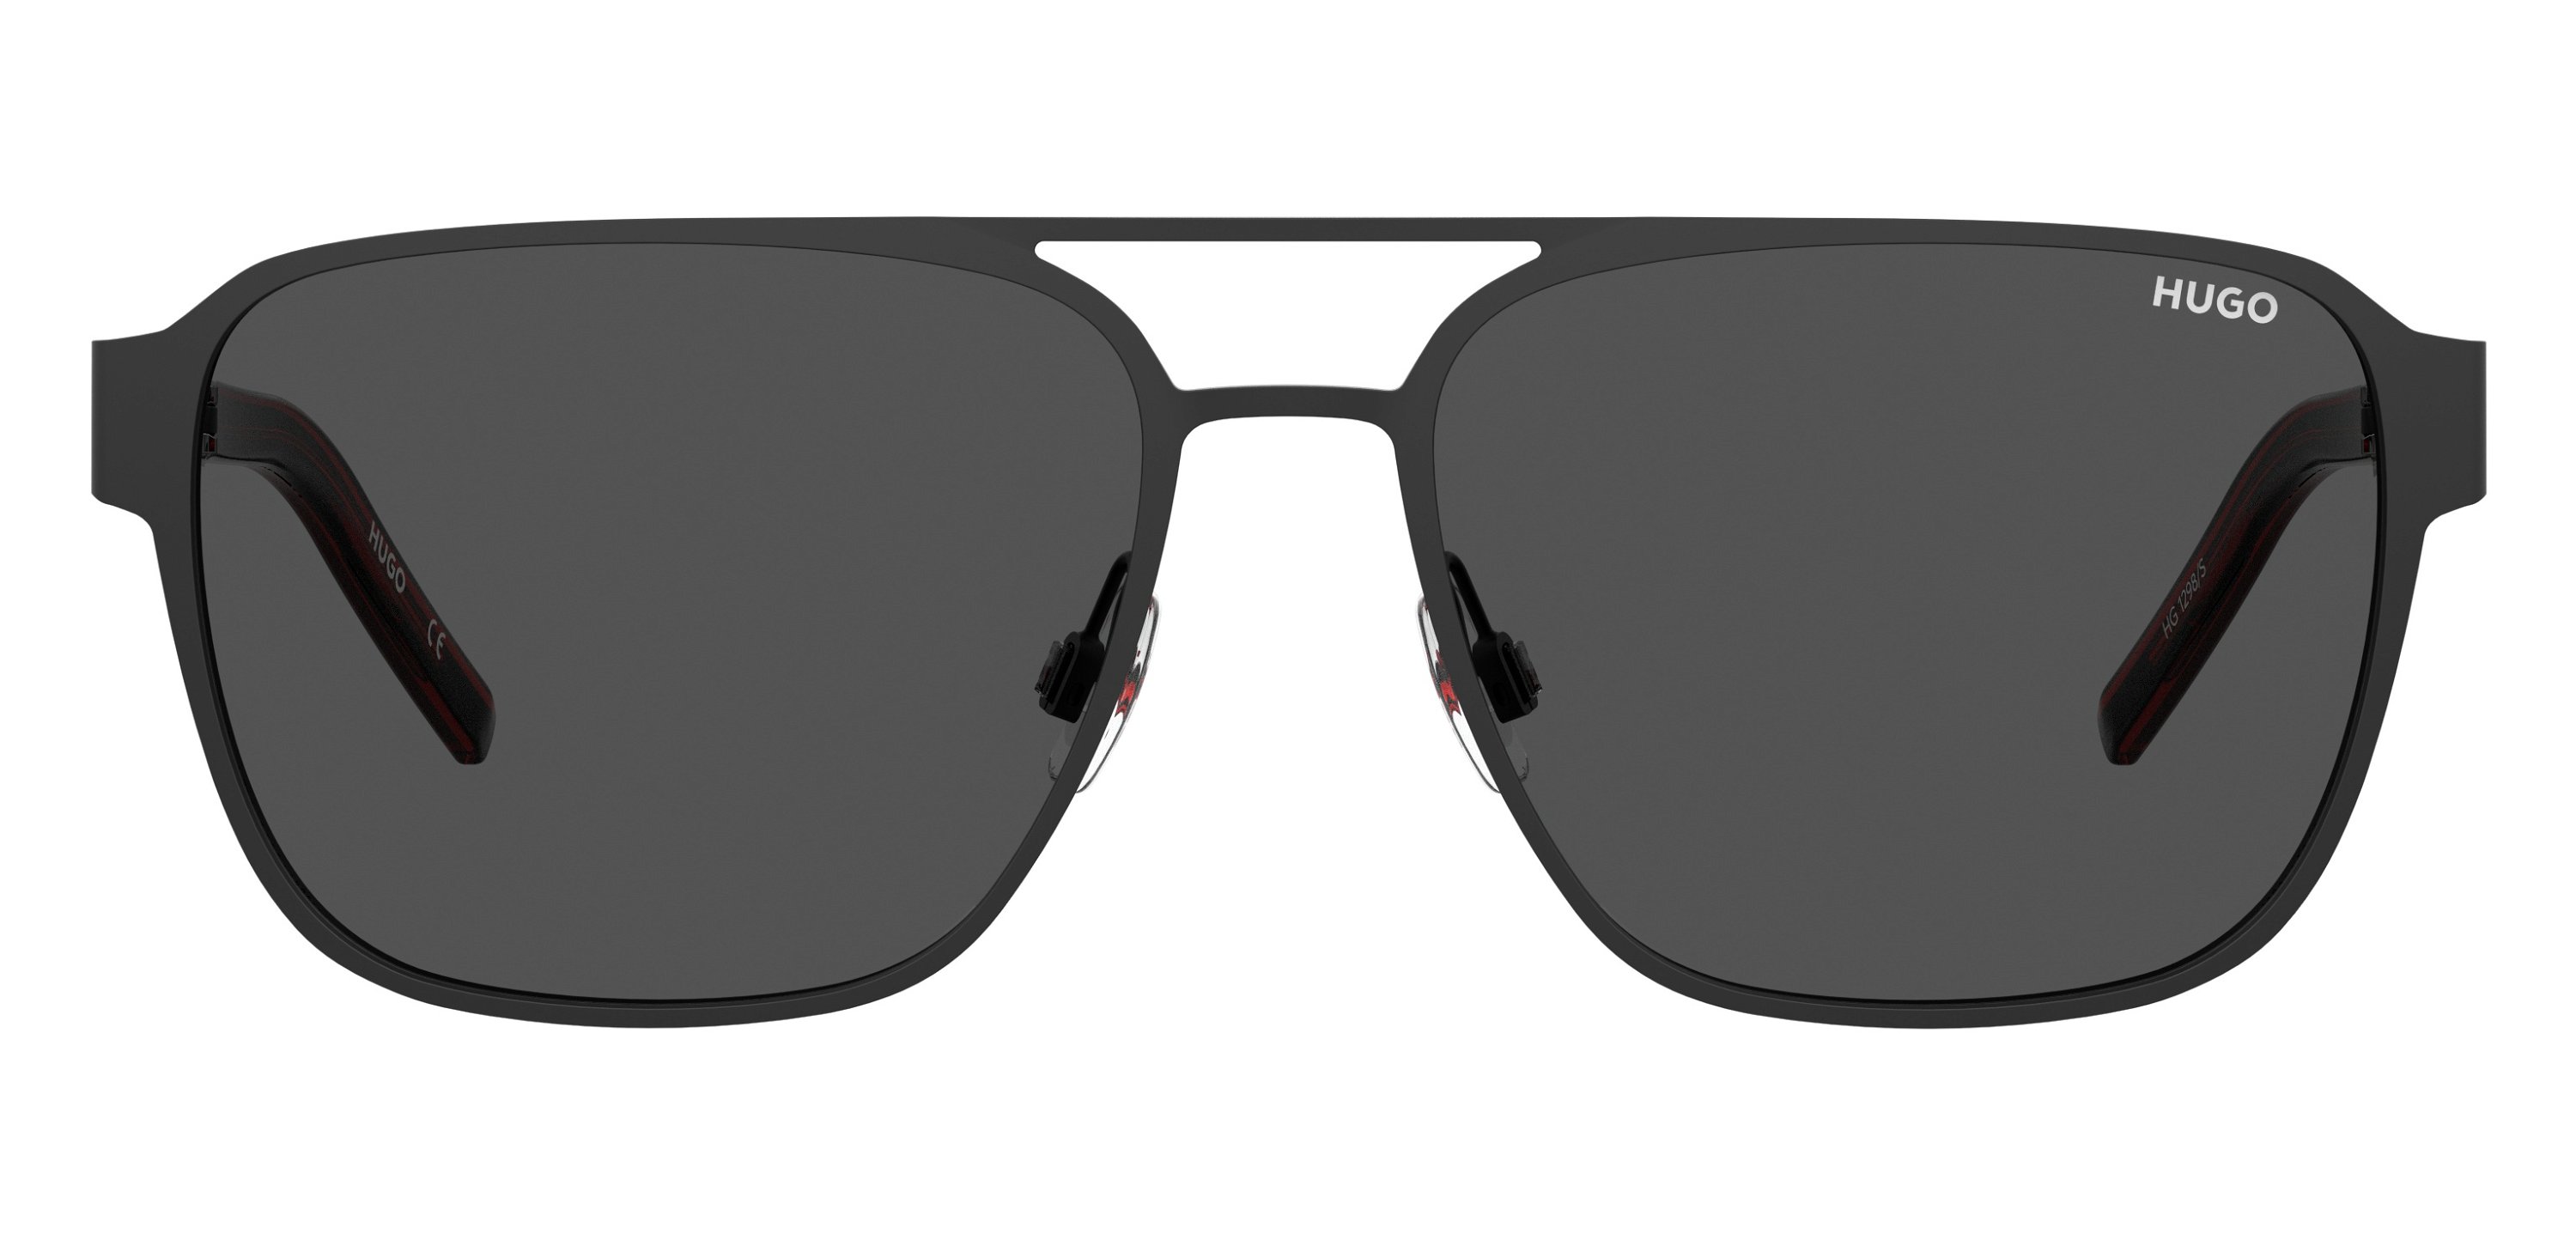 Das Bild zeigt die Sonnenbrille HG1298/S OIT von der Marke Hugo in rot/schwarz.